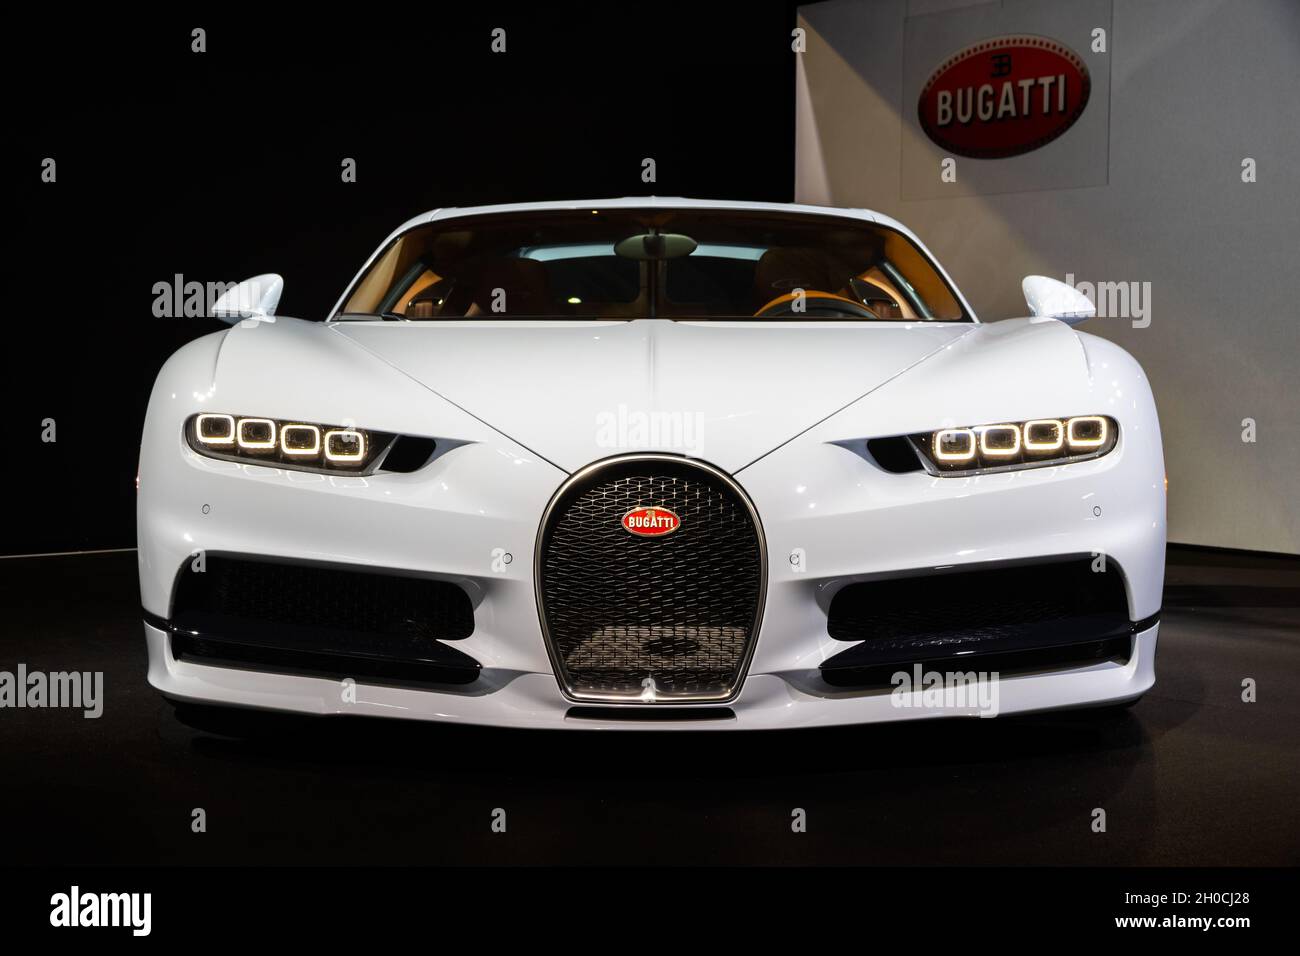 Bugatti Chiron 8.0 W16 DSG voiture sportive séquentielle présentée au salon de l'automobile de Paris.2 octobre 2018 Banque D'Images